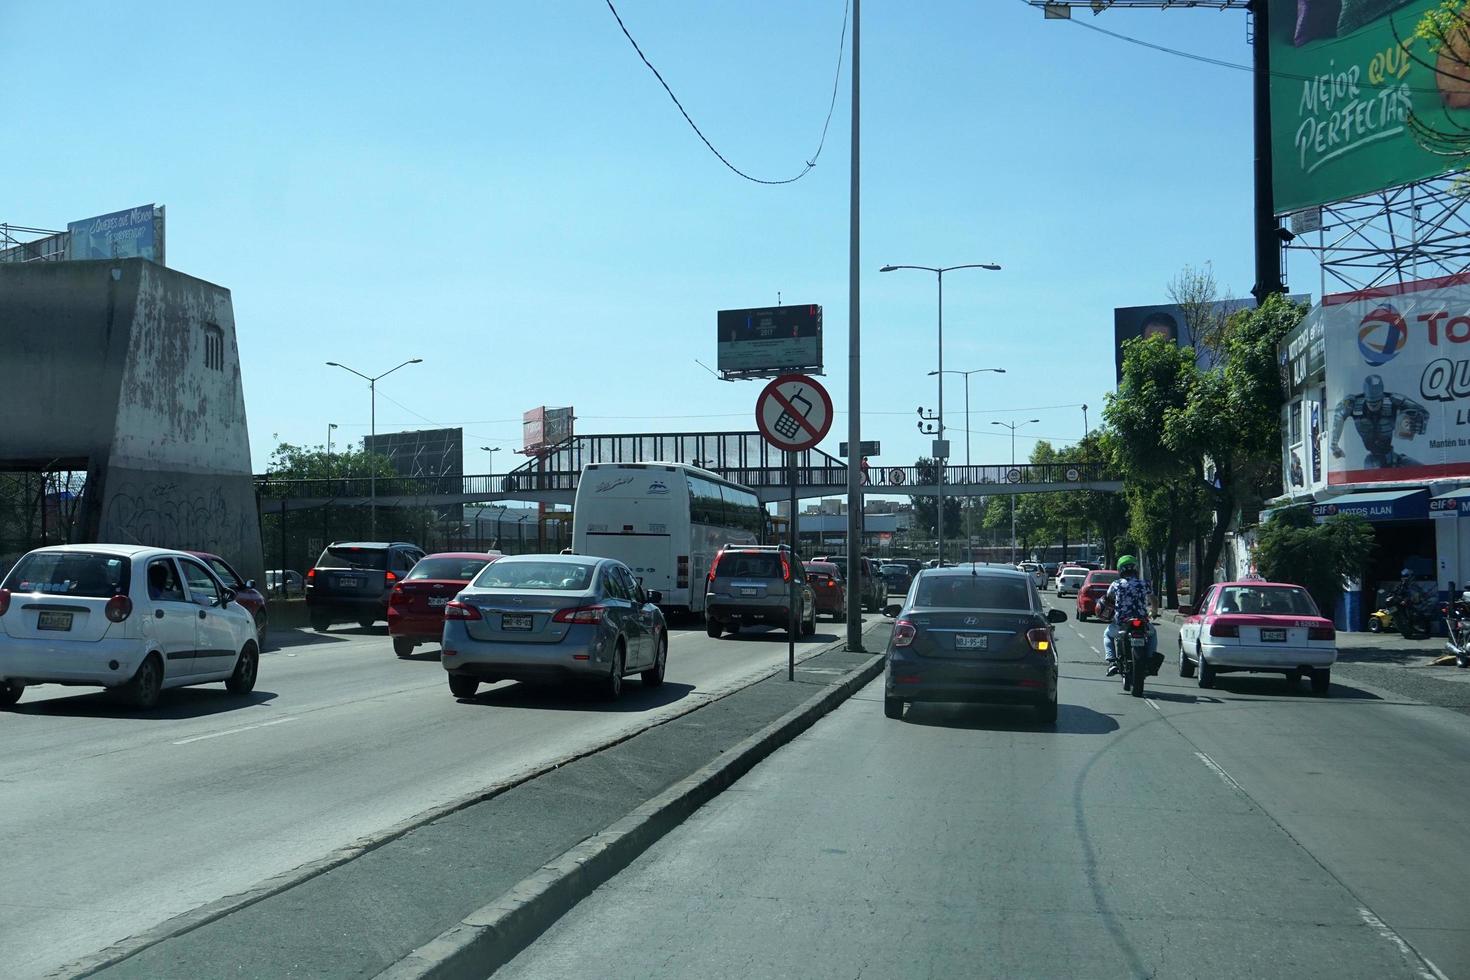 ciudad de méxico, méxico - 5 de noviembre de 2017 - tráfico congestionado de la capital de la metrópoli mexicana foto